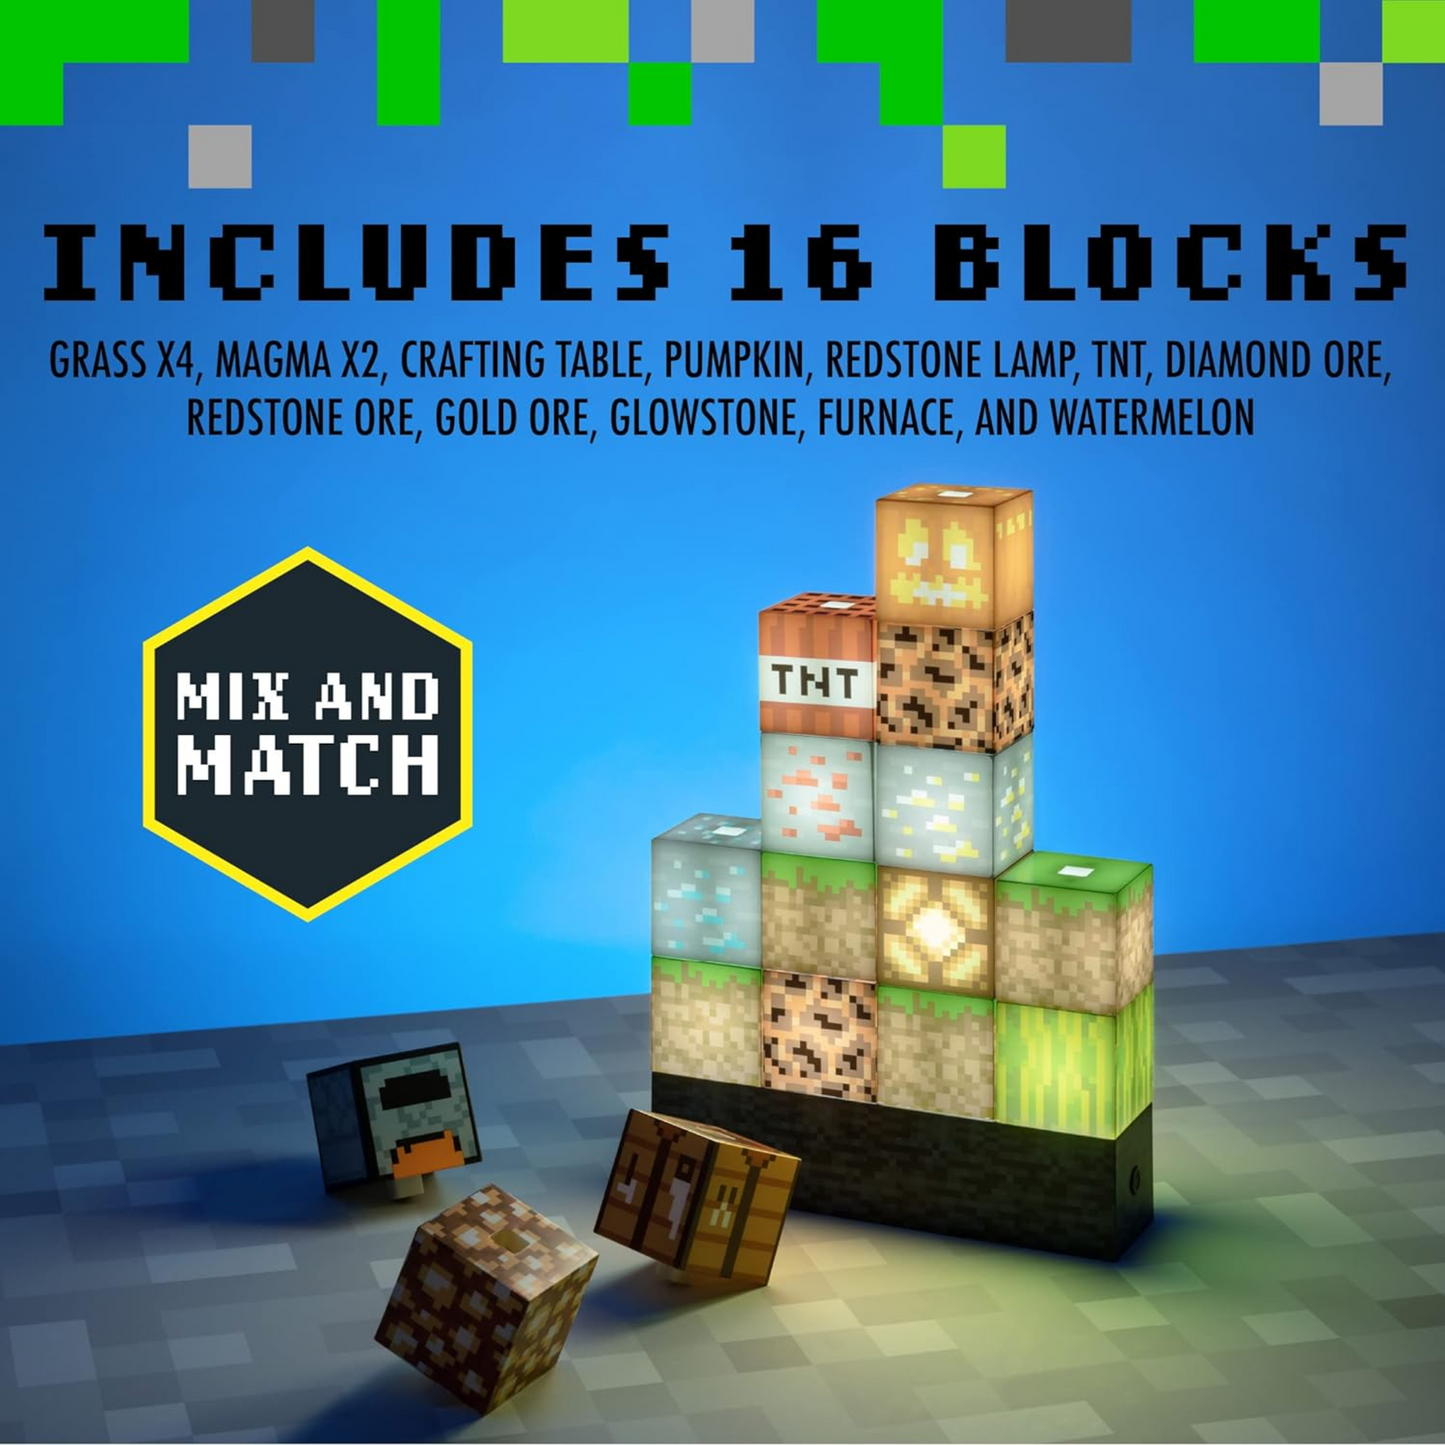 Minecraft Block building lights 16 pieces - Paladone